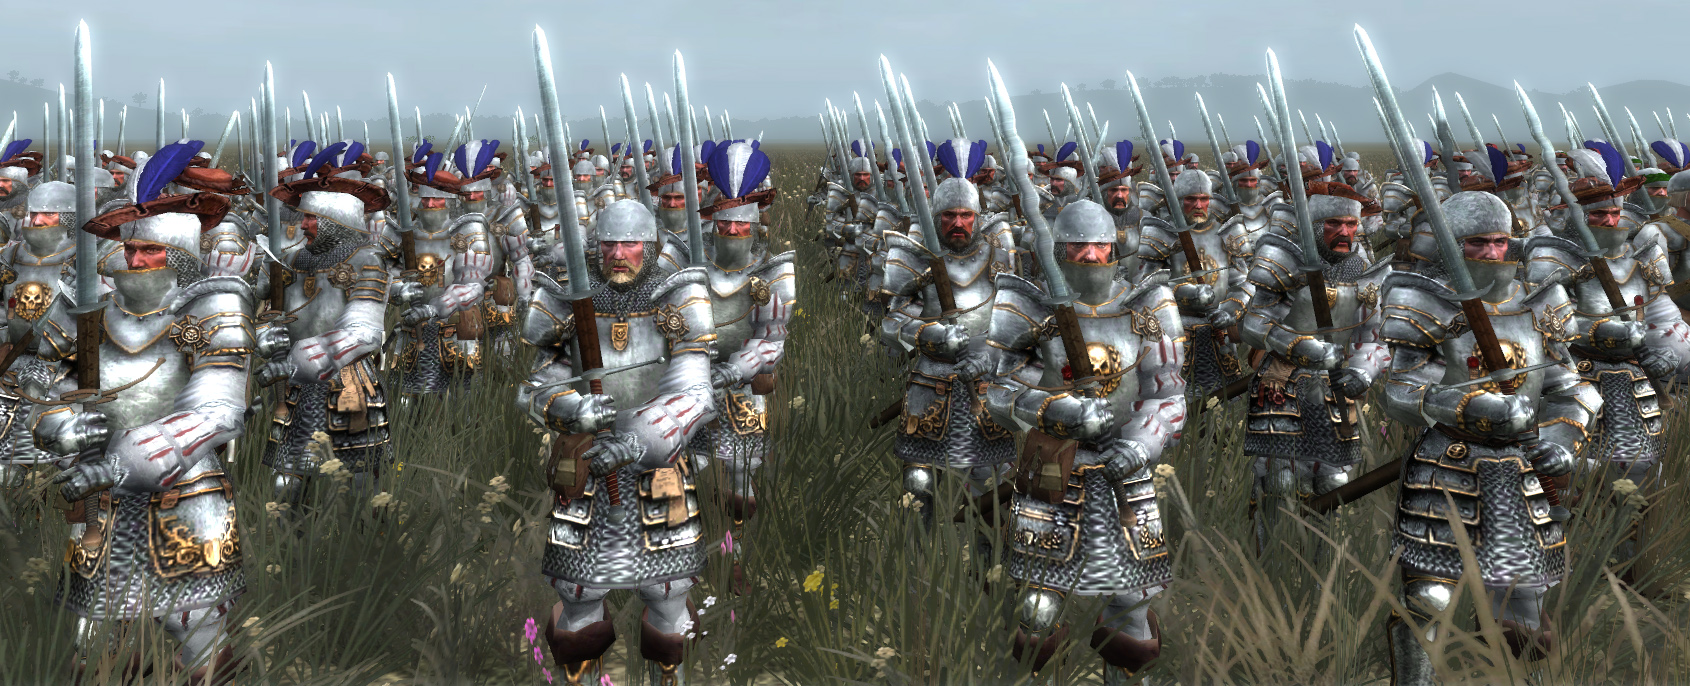 Medieval 2 total war unit scale mod